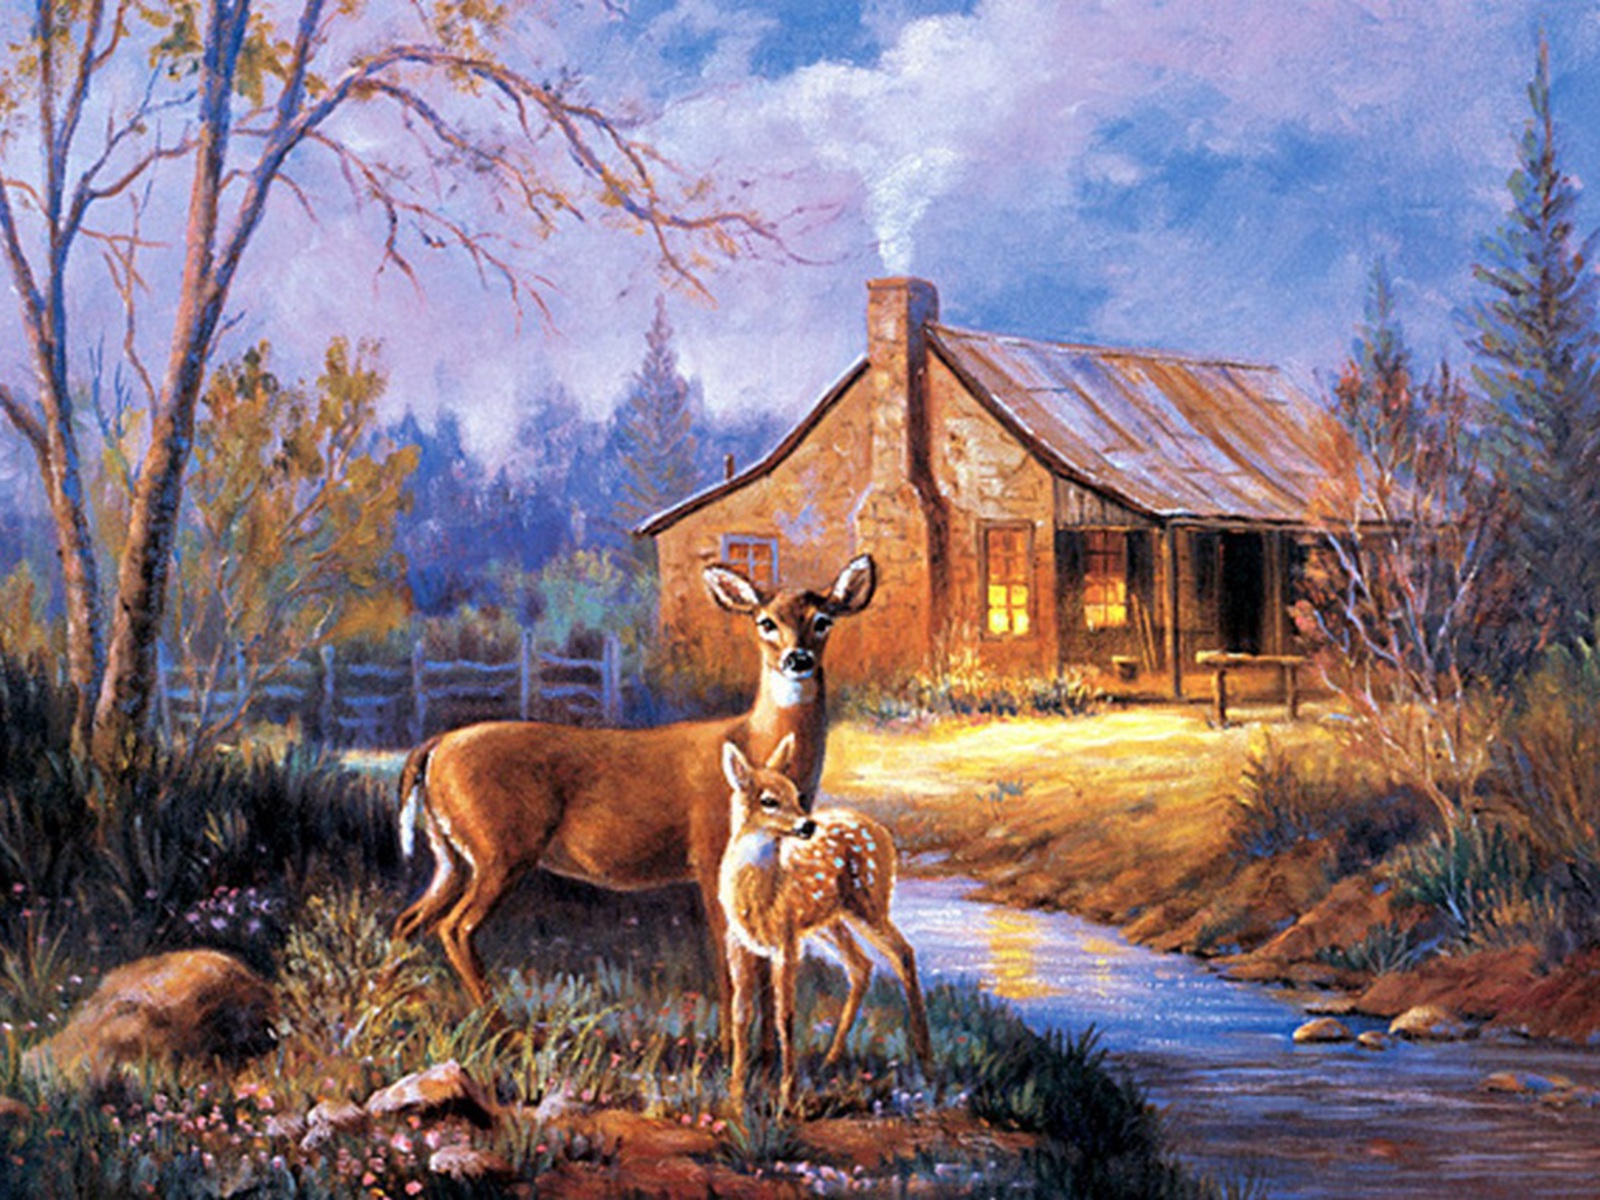  deer wallpaper for computerdeer pictures deer desktop wallpaperfree